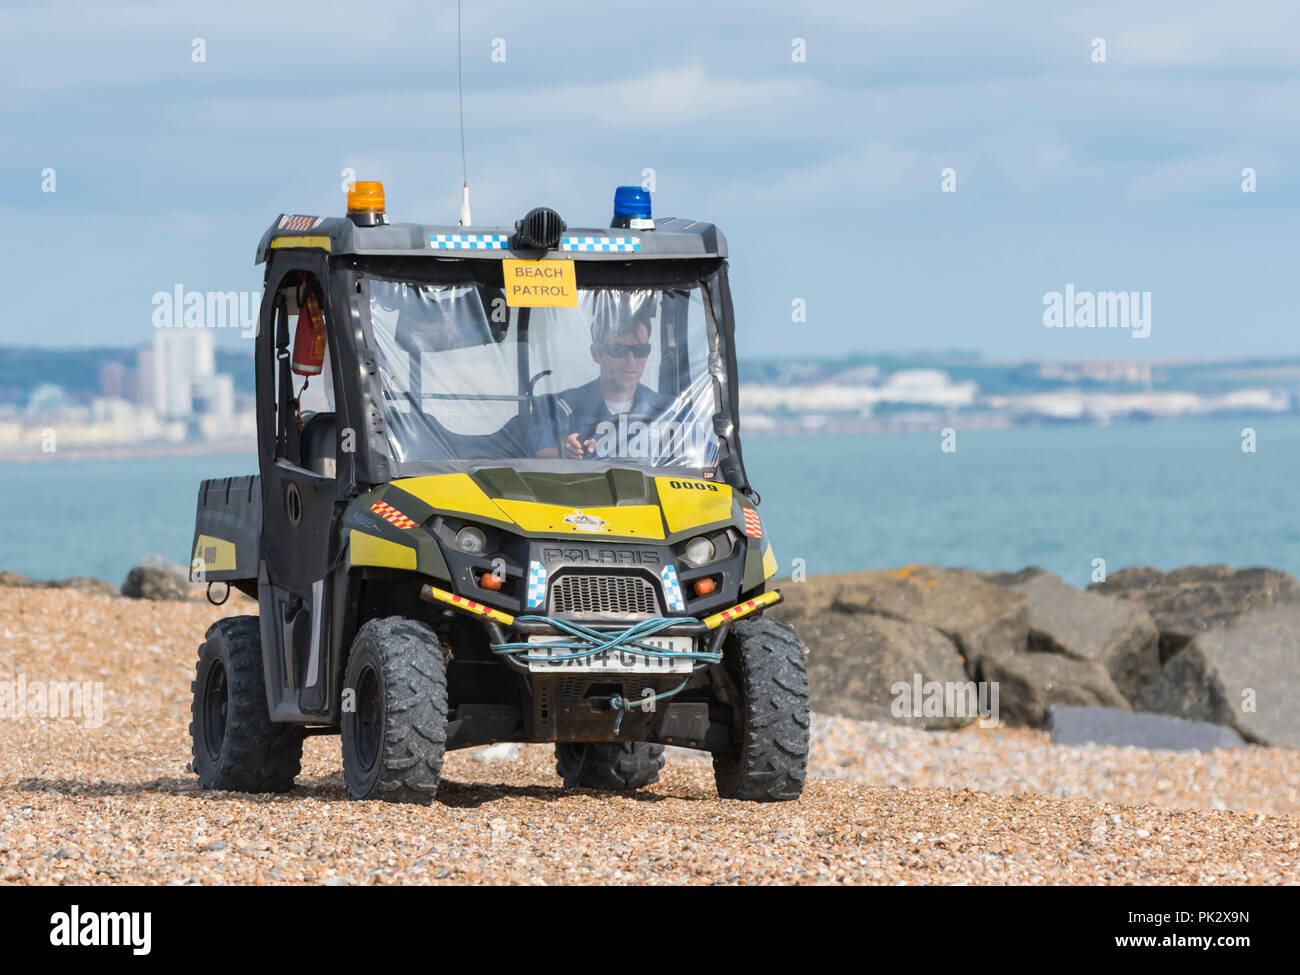 Polaris 400 Sportivo 4x4 light utility beach patrol veicolo su di una spiaggia di ciottoli sulla costa sud dell'Inghilterra, Regno Unito. Foto Stock